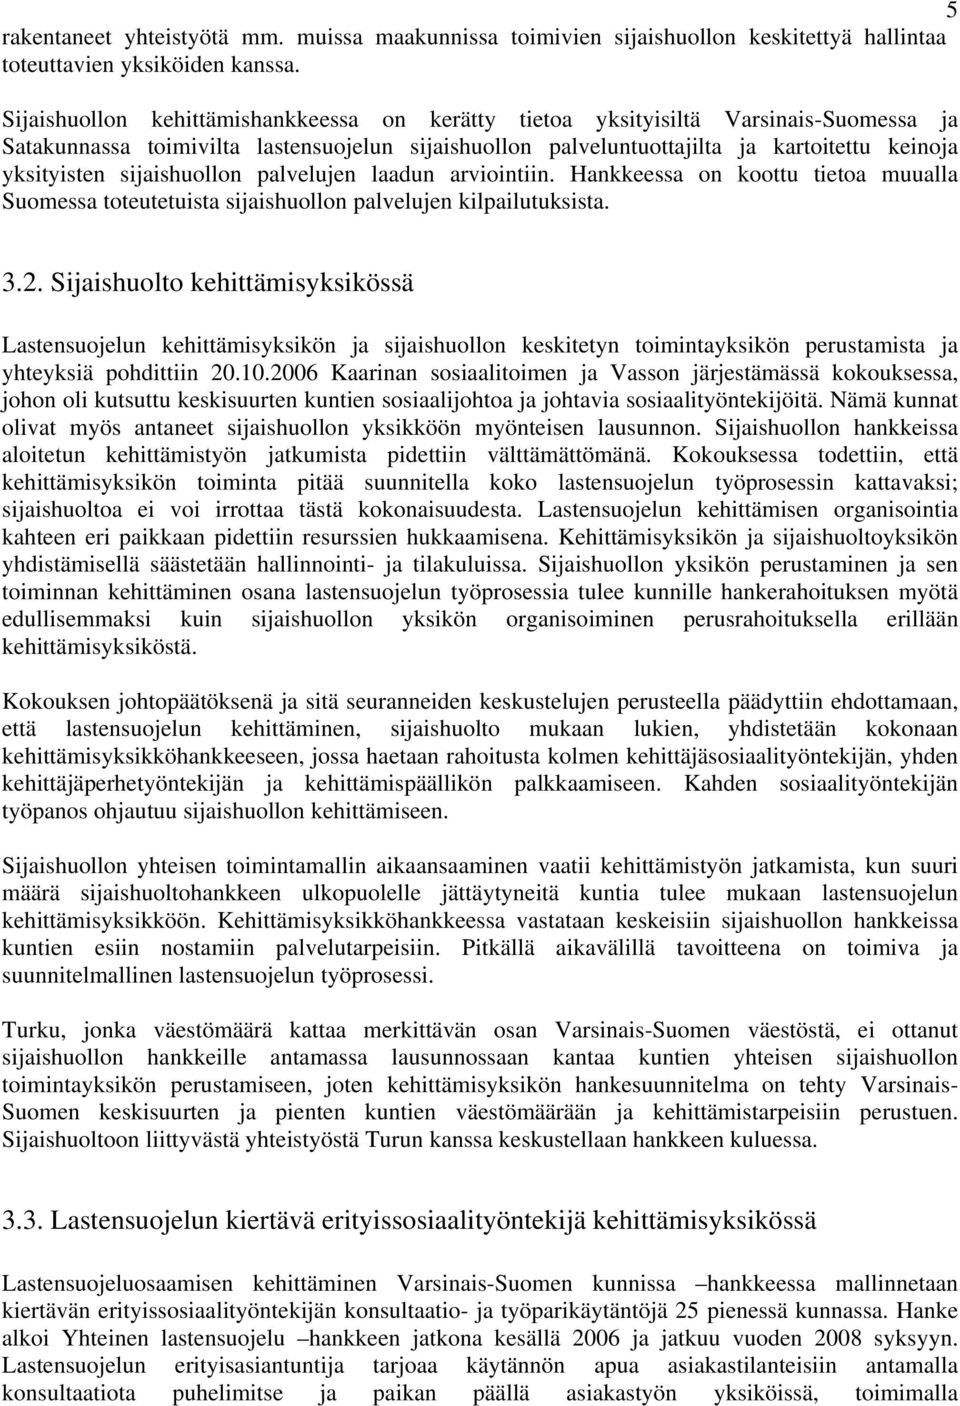 sijaishuollon palvelujen laadun arviointiin. Hankkeessa on koottu tietoa muualla Suomessa toteutetuista sijaishuollon palvelujen kilpailutuksista. 3.2.